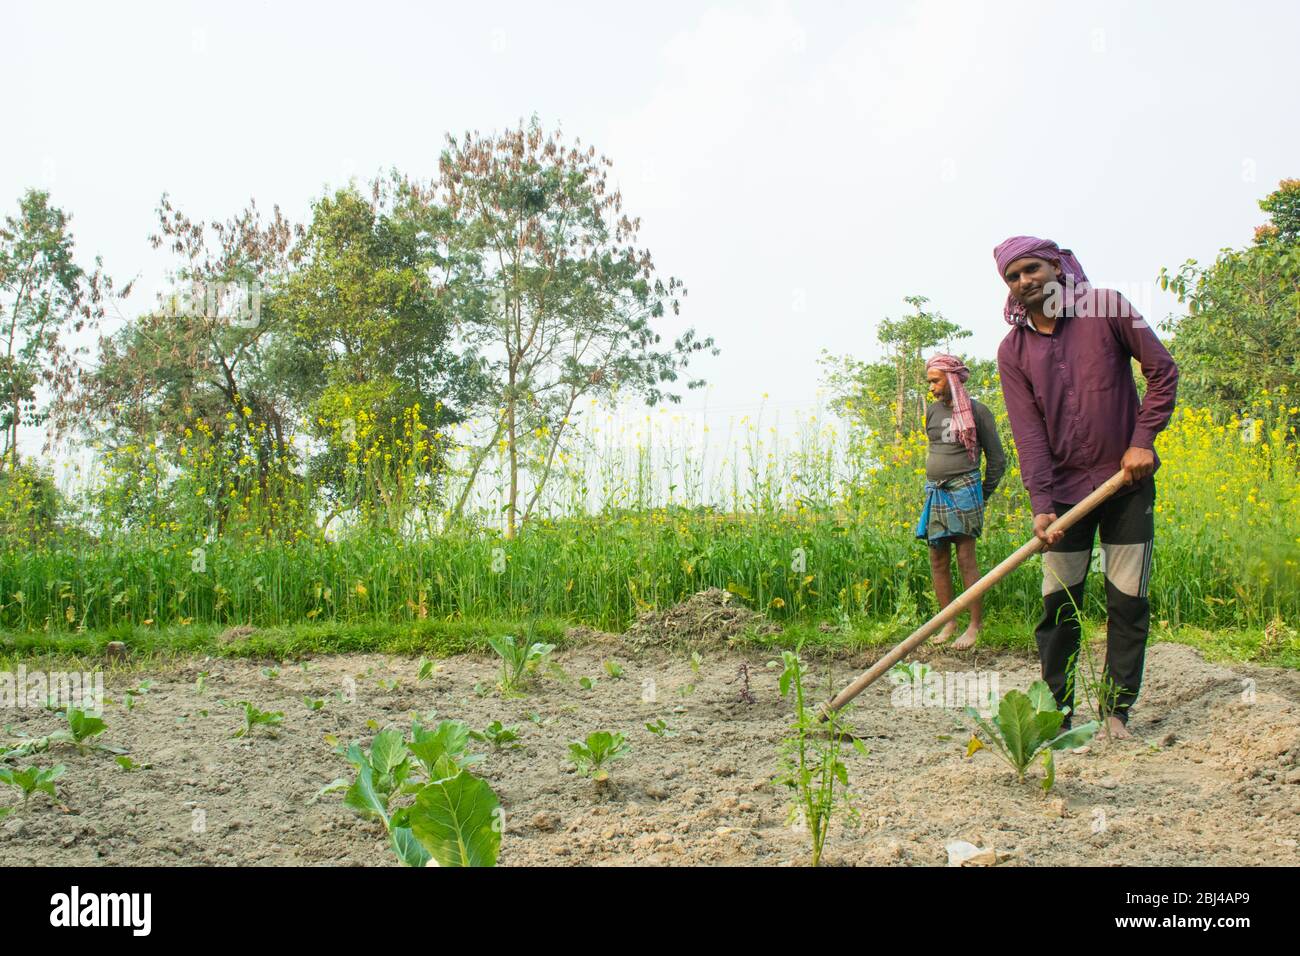 Agriculteur indien faisant du travail agricole, Inde Banque D'Images